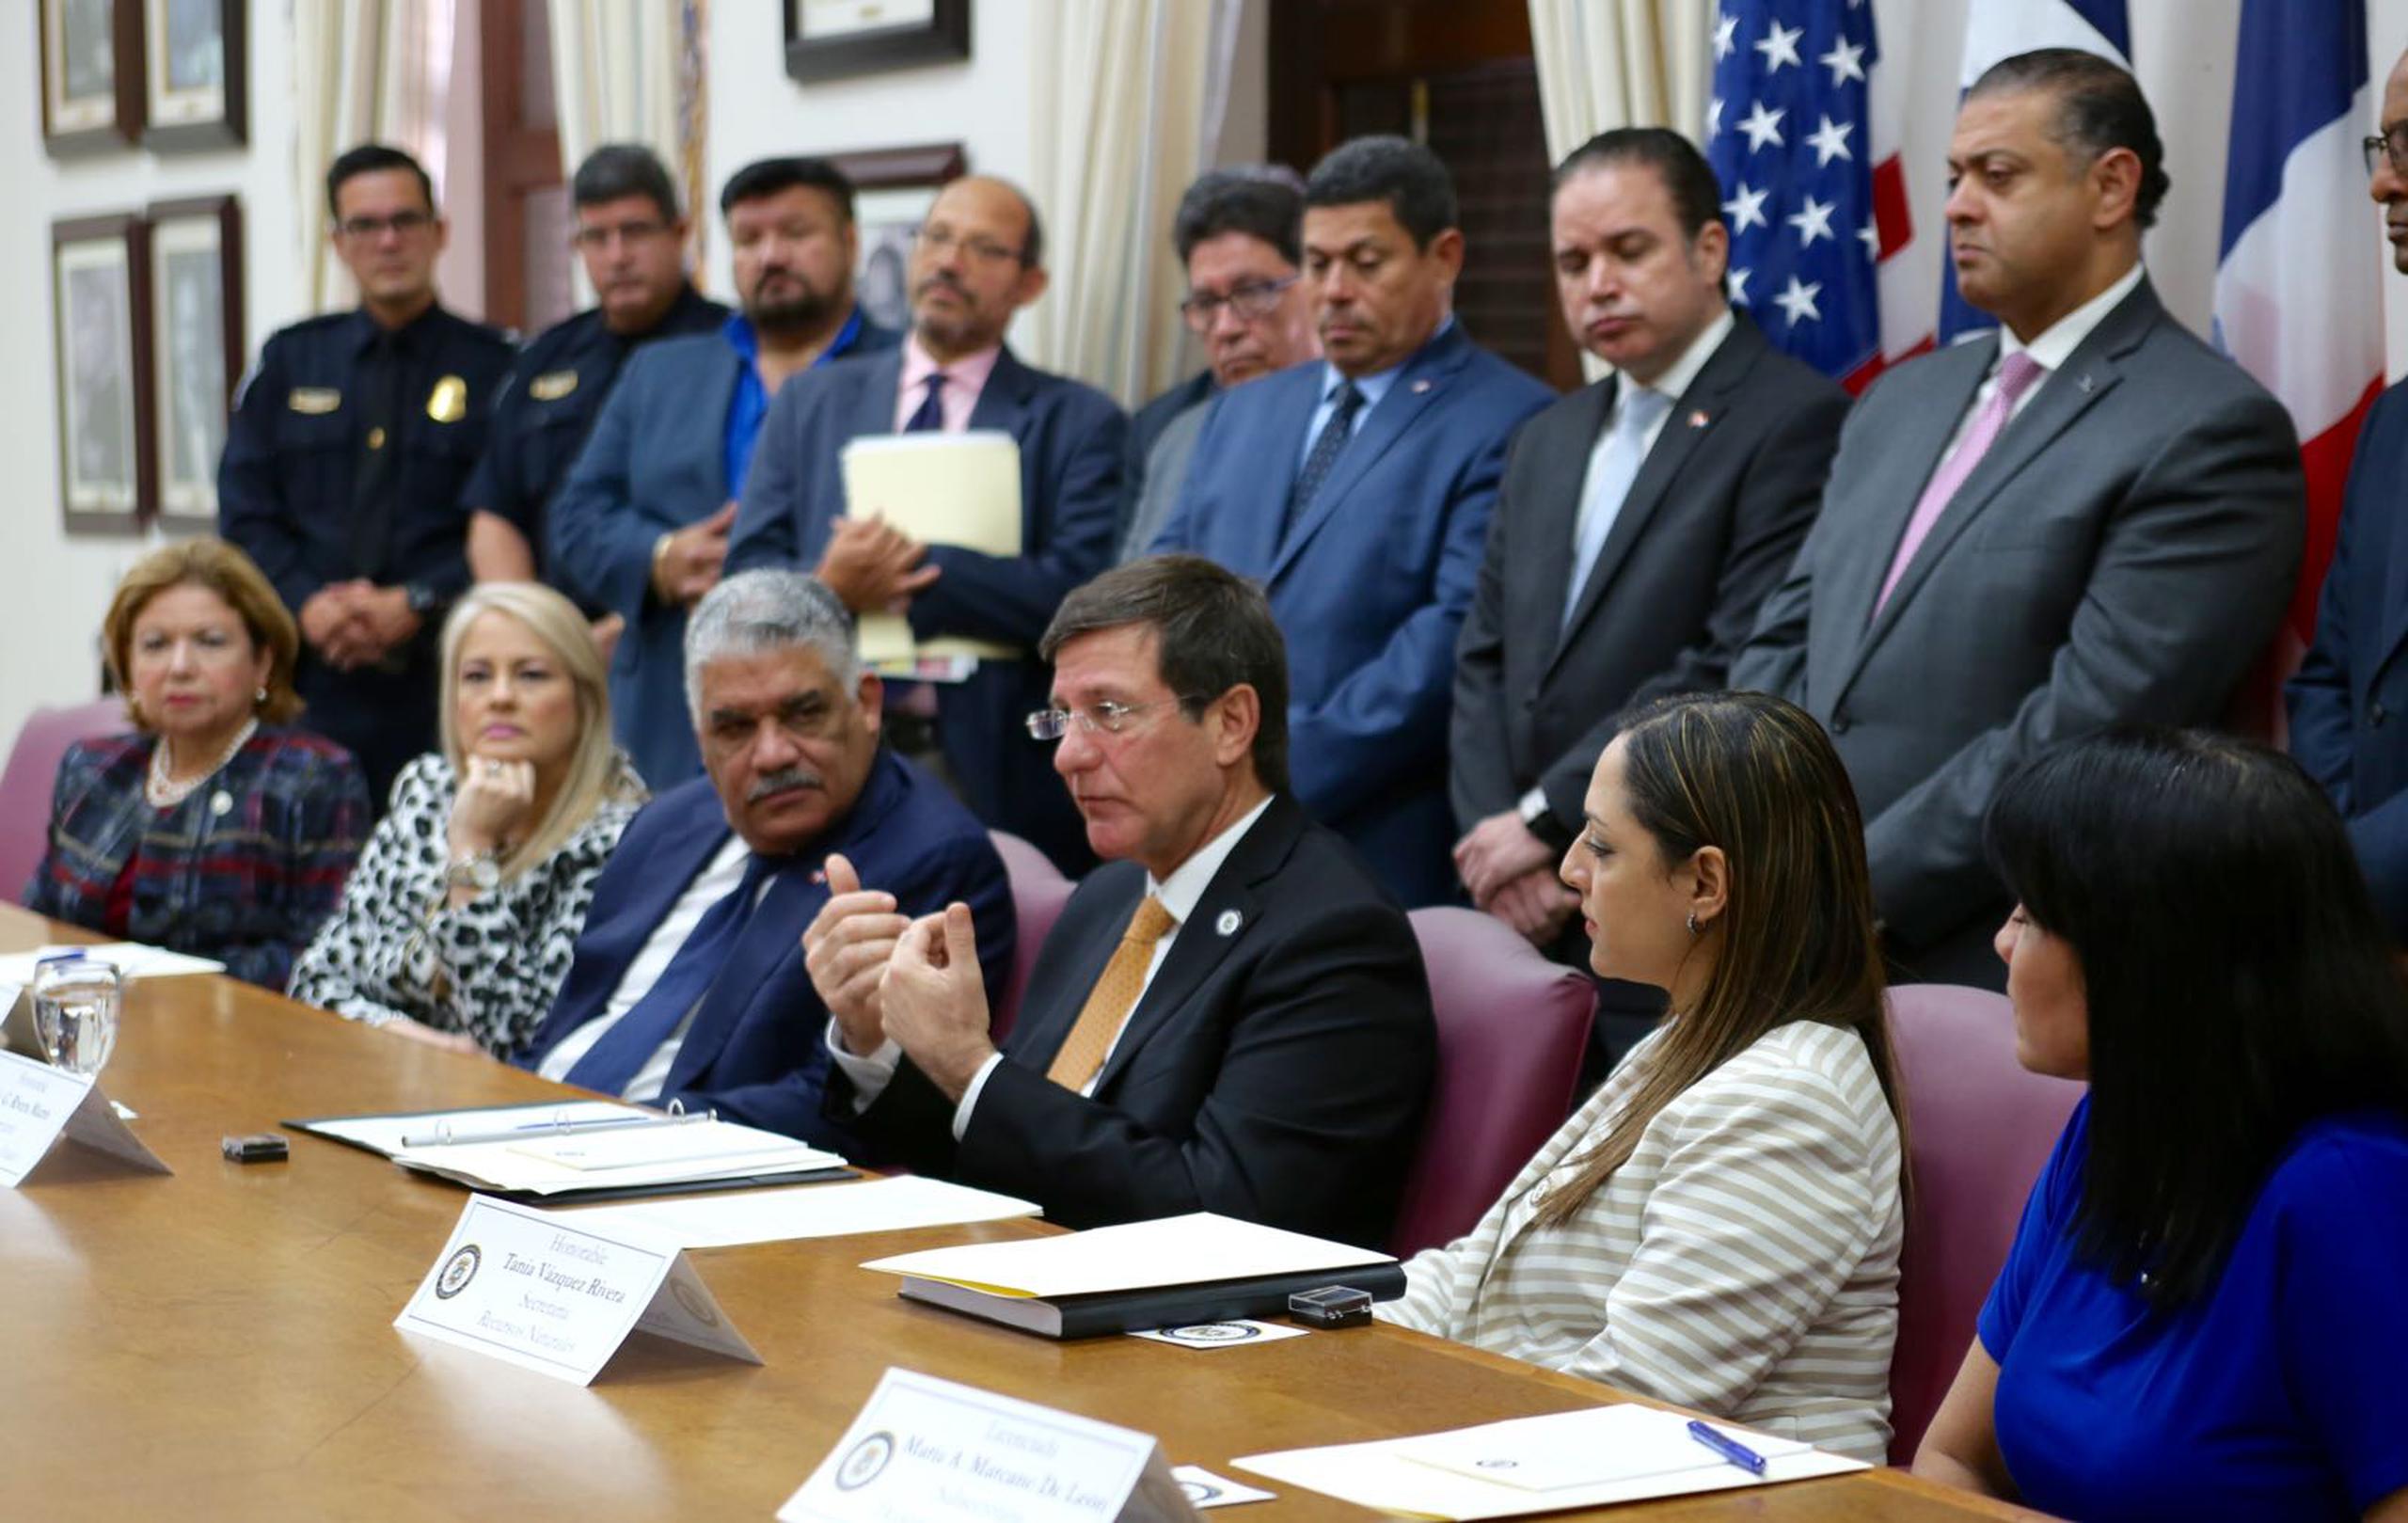 Como parte de los acuerdos, Rivera Marín y Vargas anunciaron la creación de un comité de trabajo con funcionarios en materia de desarrollo económico, intercambios culturales y educativos así como cooperación entre los dos países. (Suministrada)